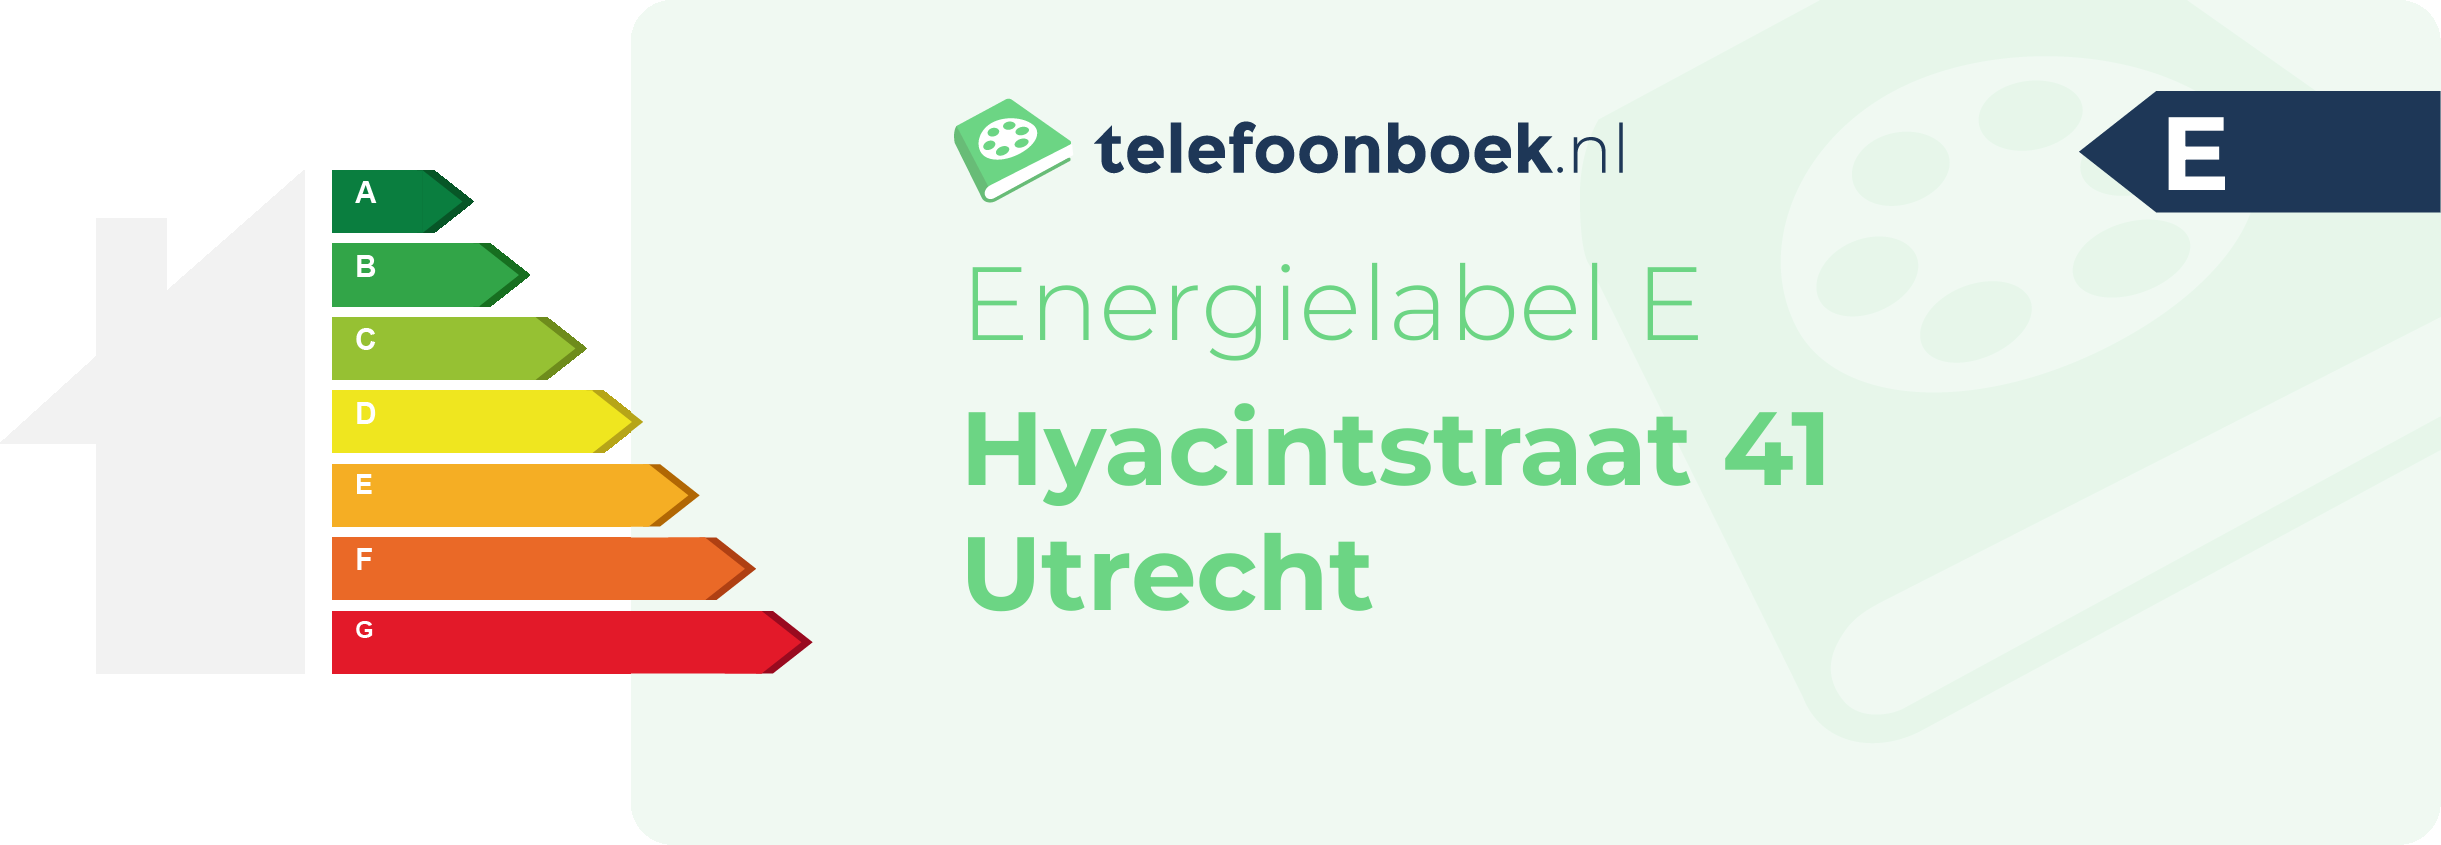 Energielabel Hyacintstraat 41 Utrecht